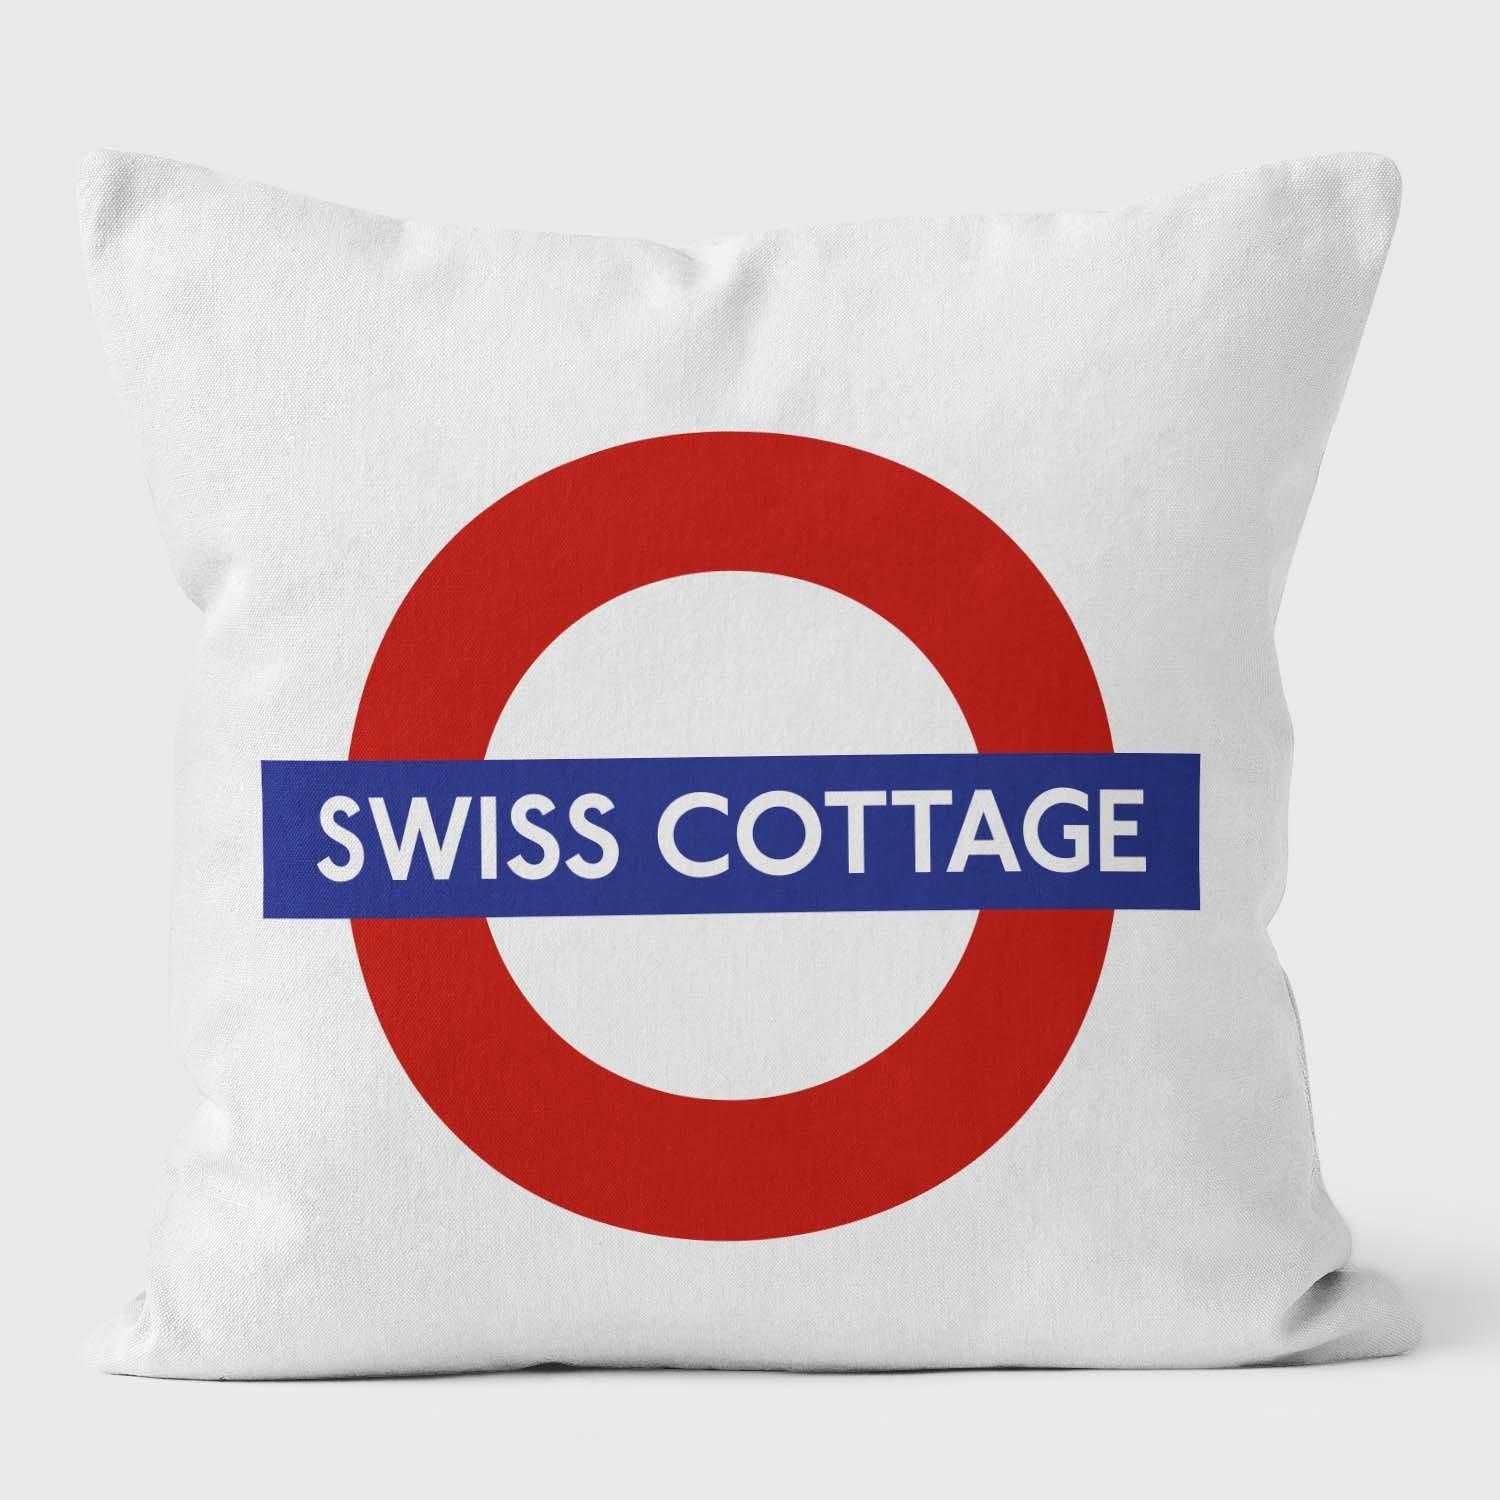 Swiss Cottage London Underground Tube Station Roundel Cushion - Handmade Cushions UK - WeLoveCushions